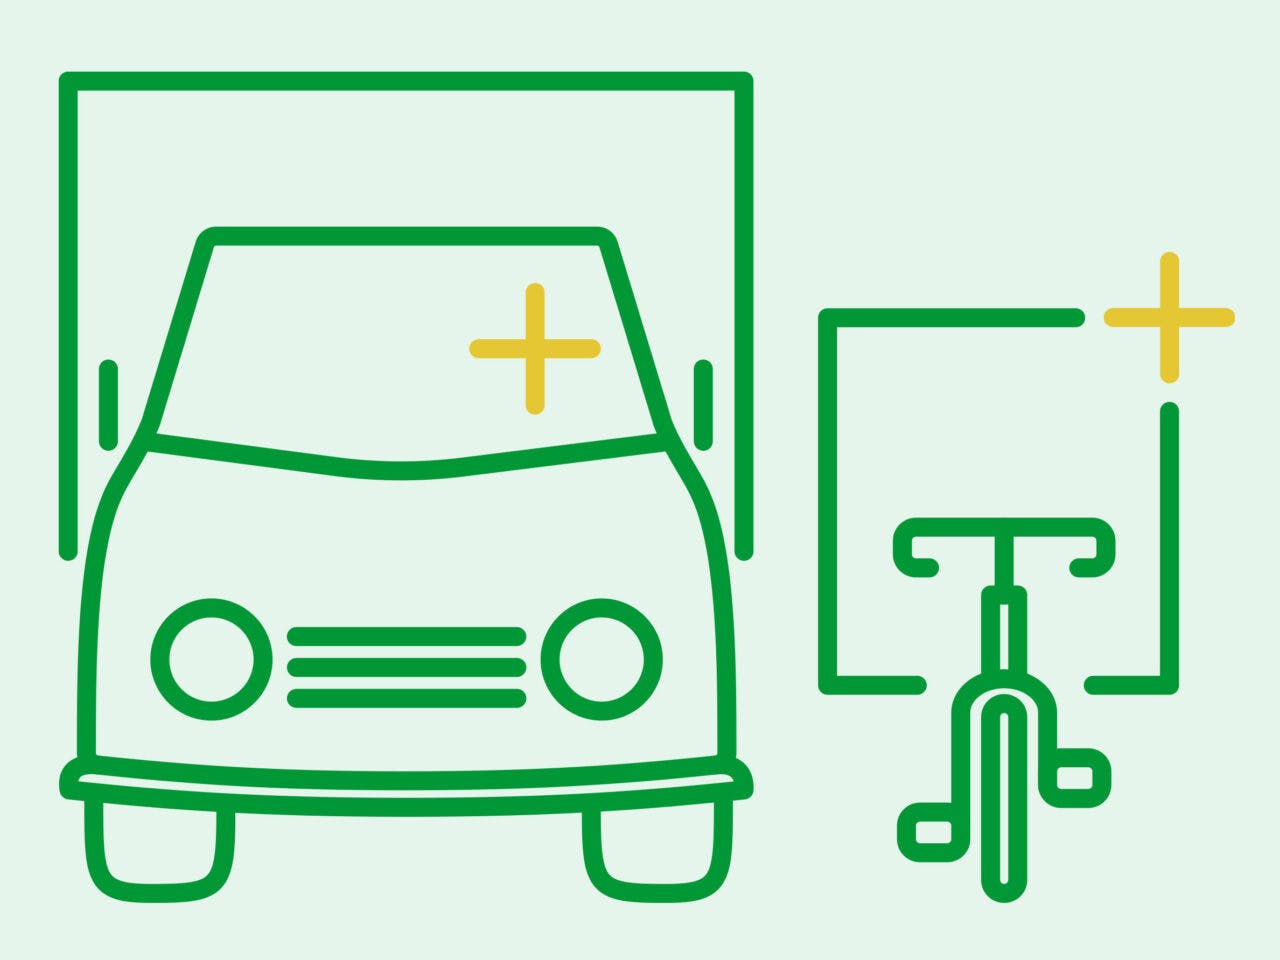 ikon, budtransporter, cykelbud, scooterbud, mopedbud, transporter, lastbil, skåpbil, miljömärkning, illustration, grön